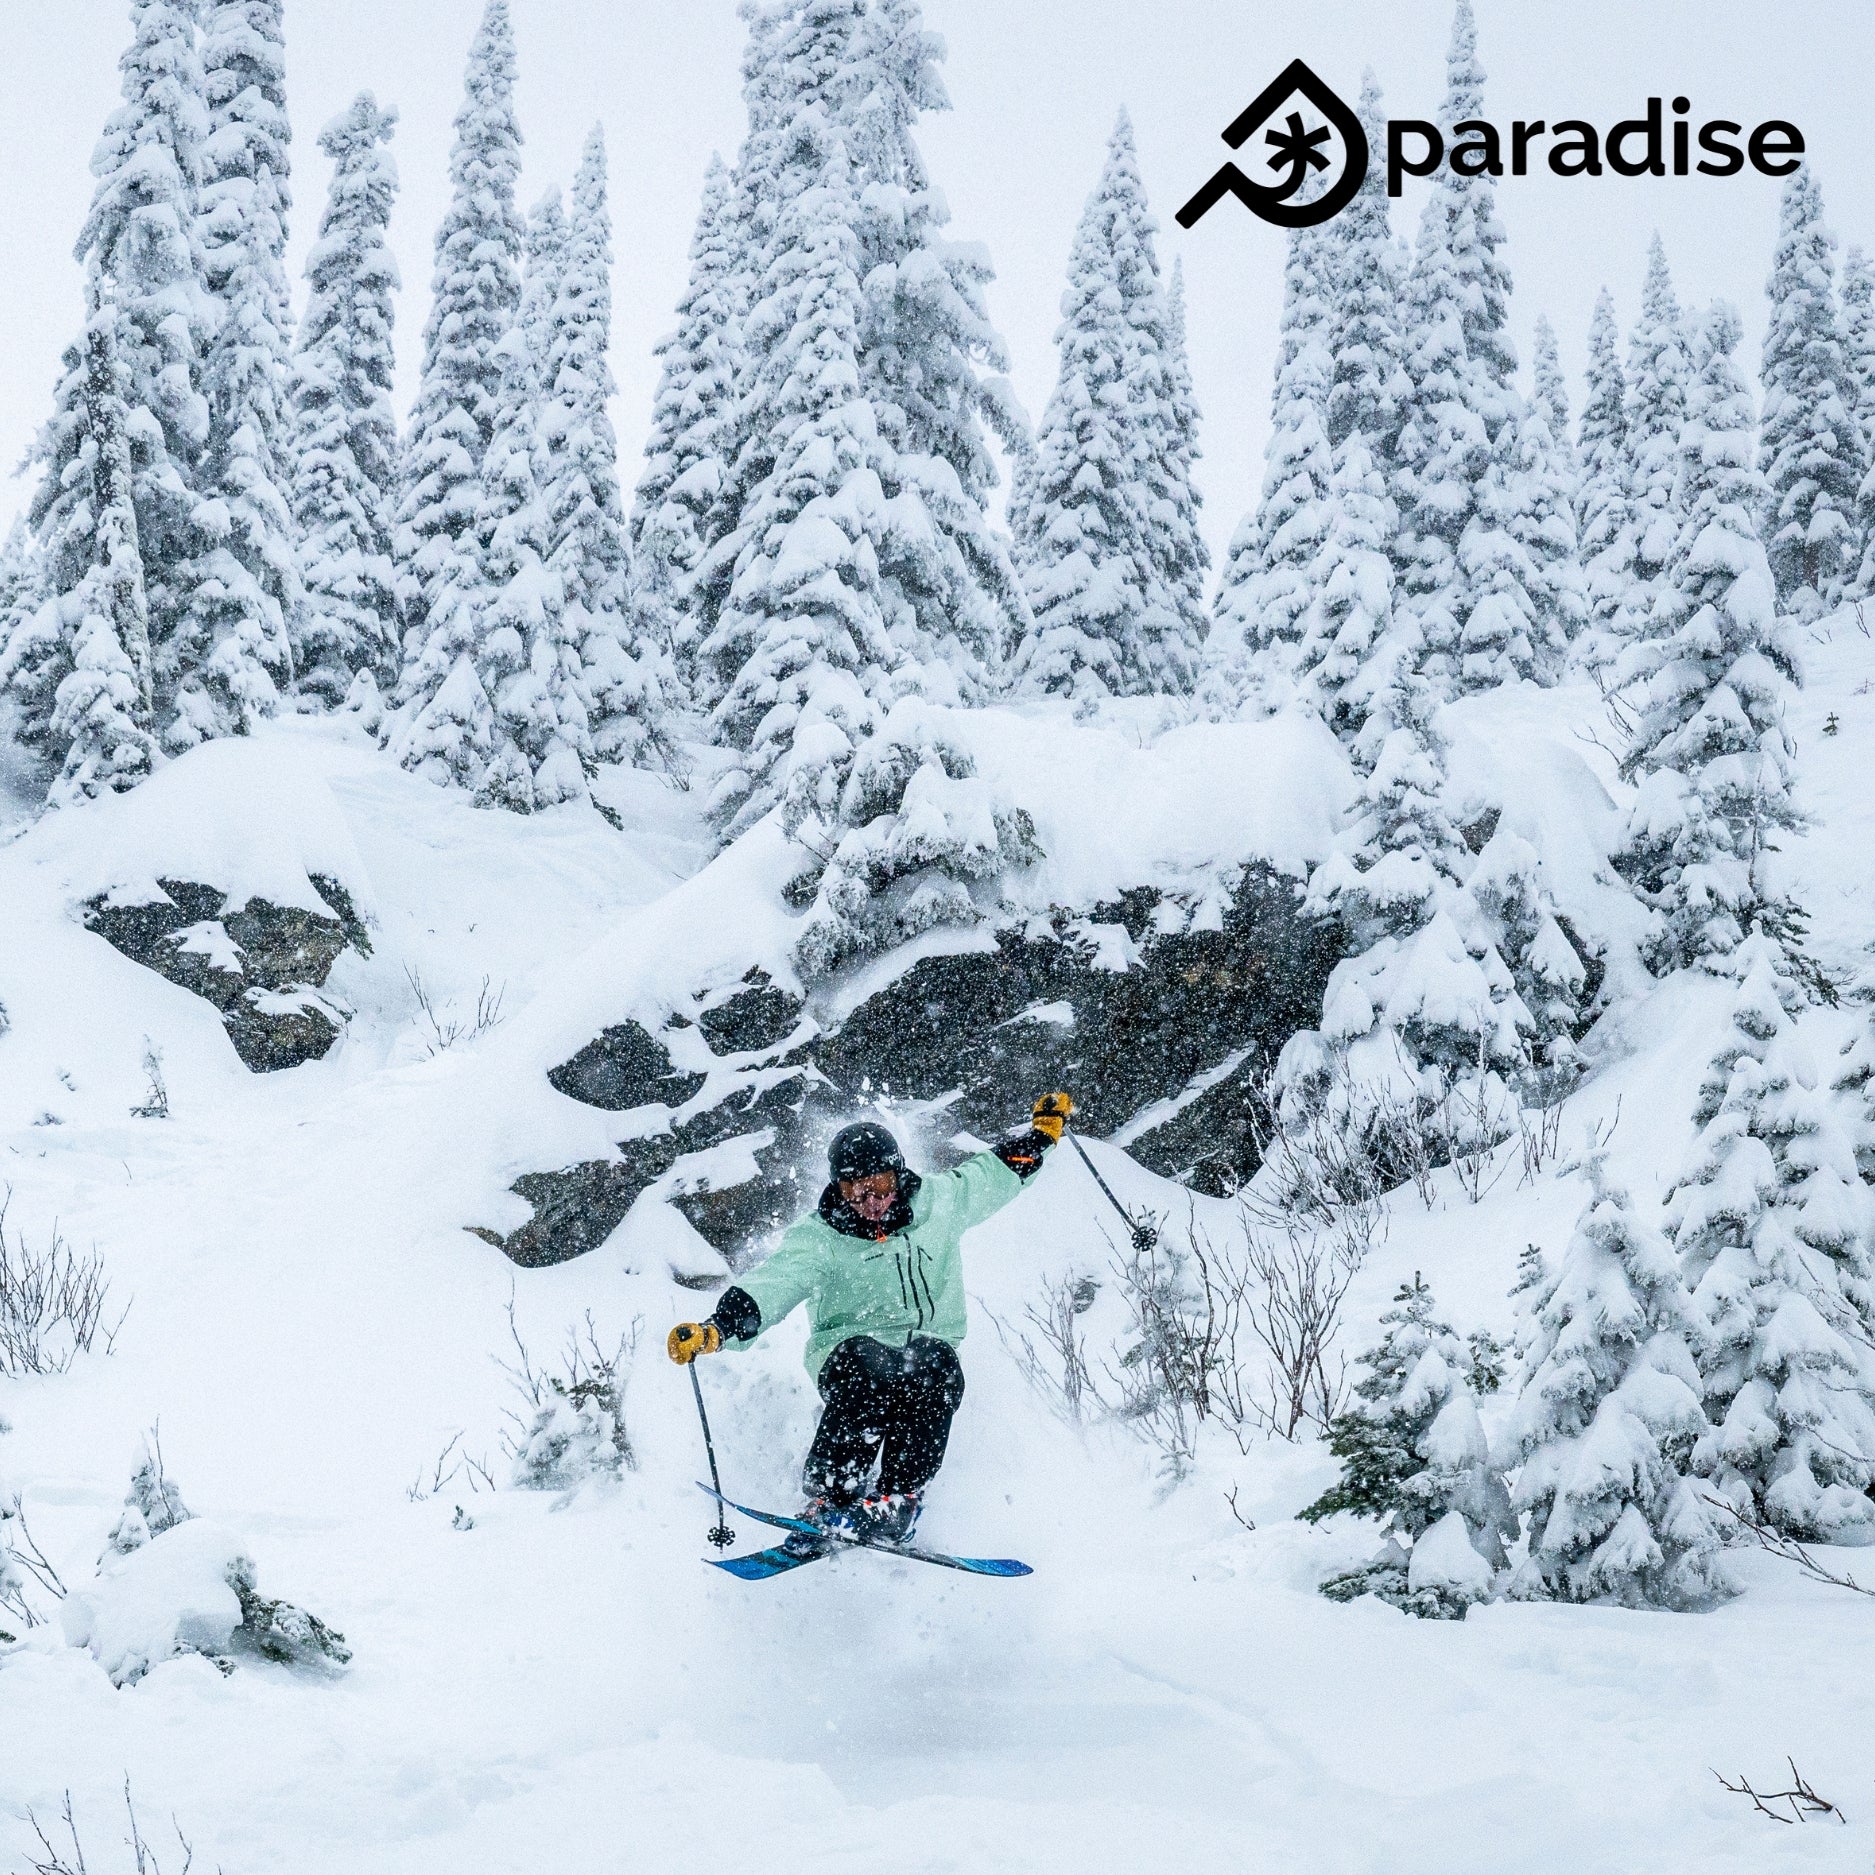 Paradise Ambassador Blayne Kanning on his VICE 105 Freeride Skis